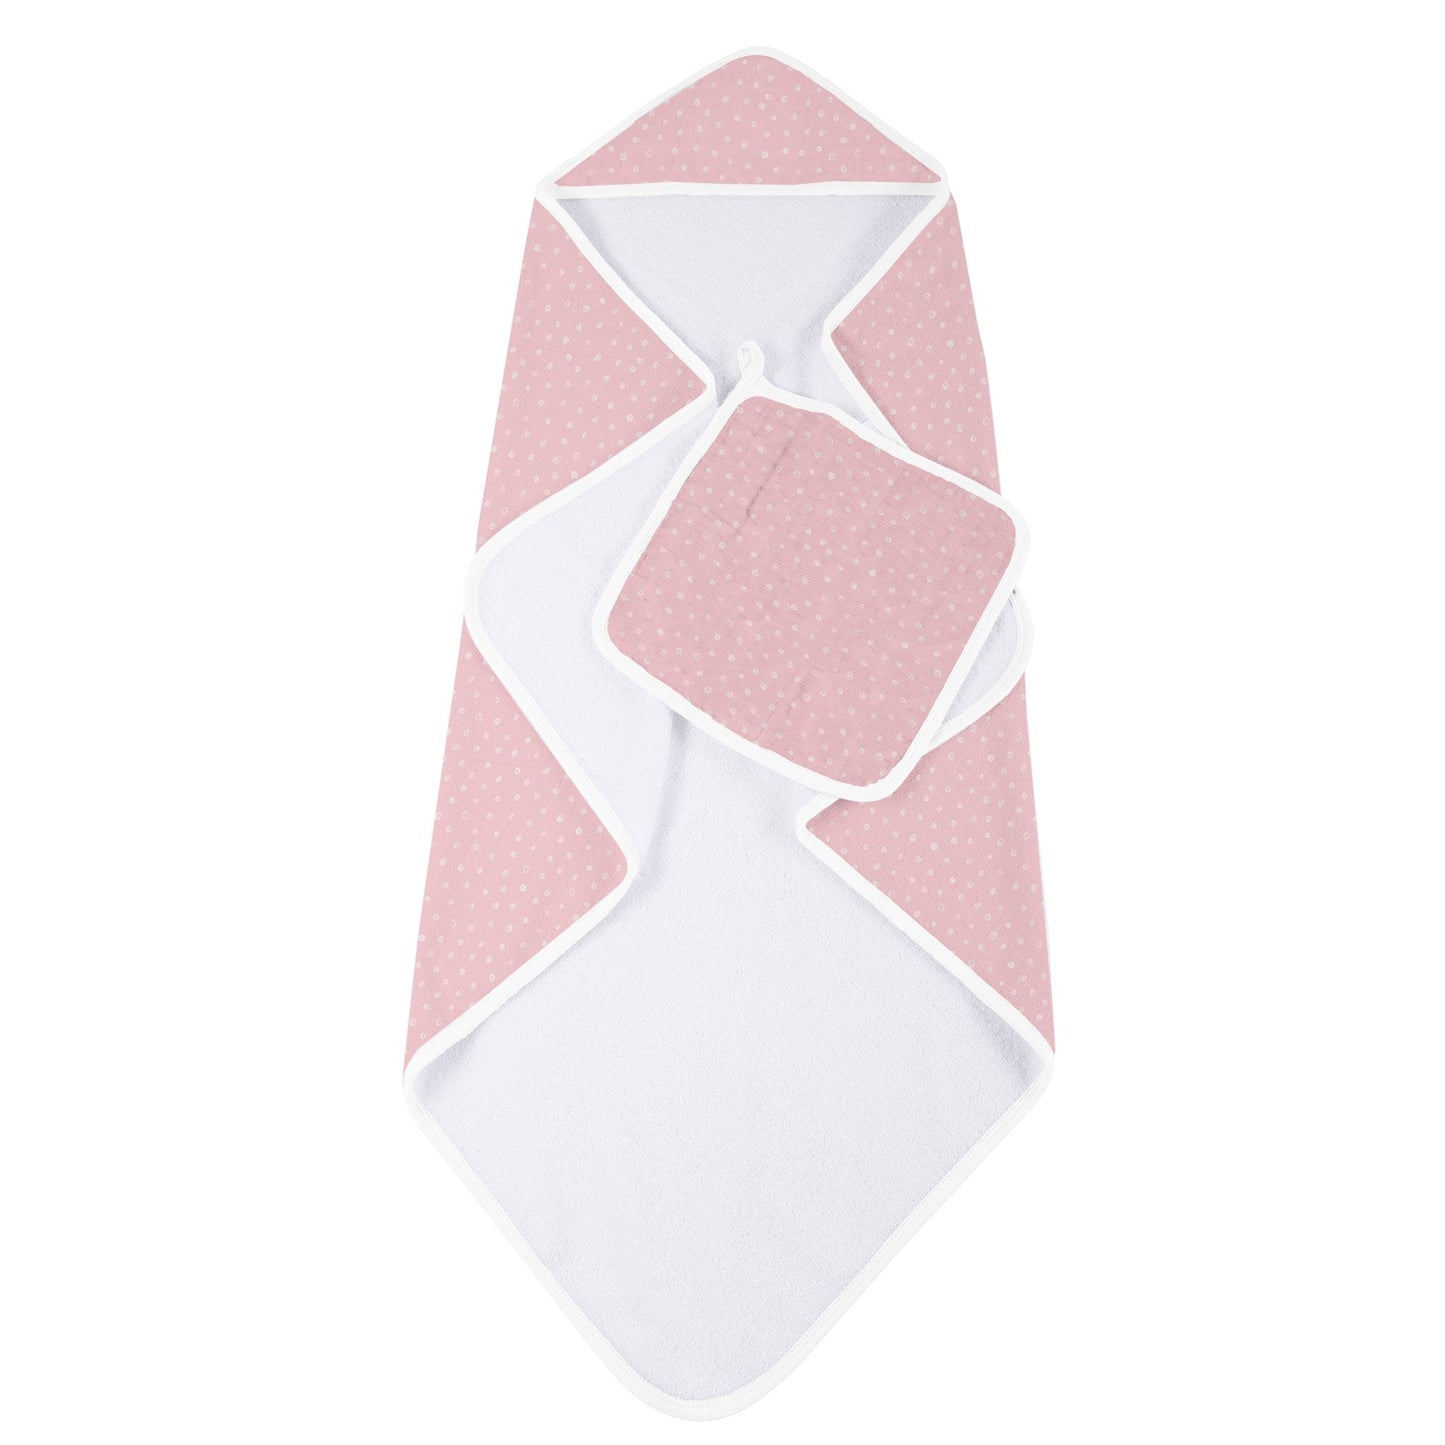 Pink Polka Dot Hooded Towel and Washcloth Set